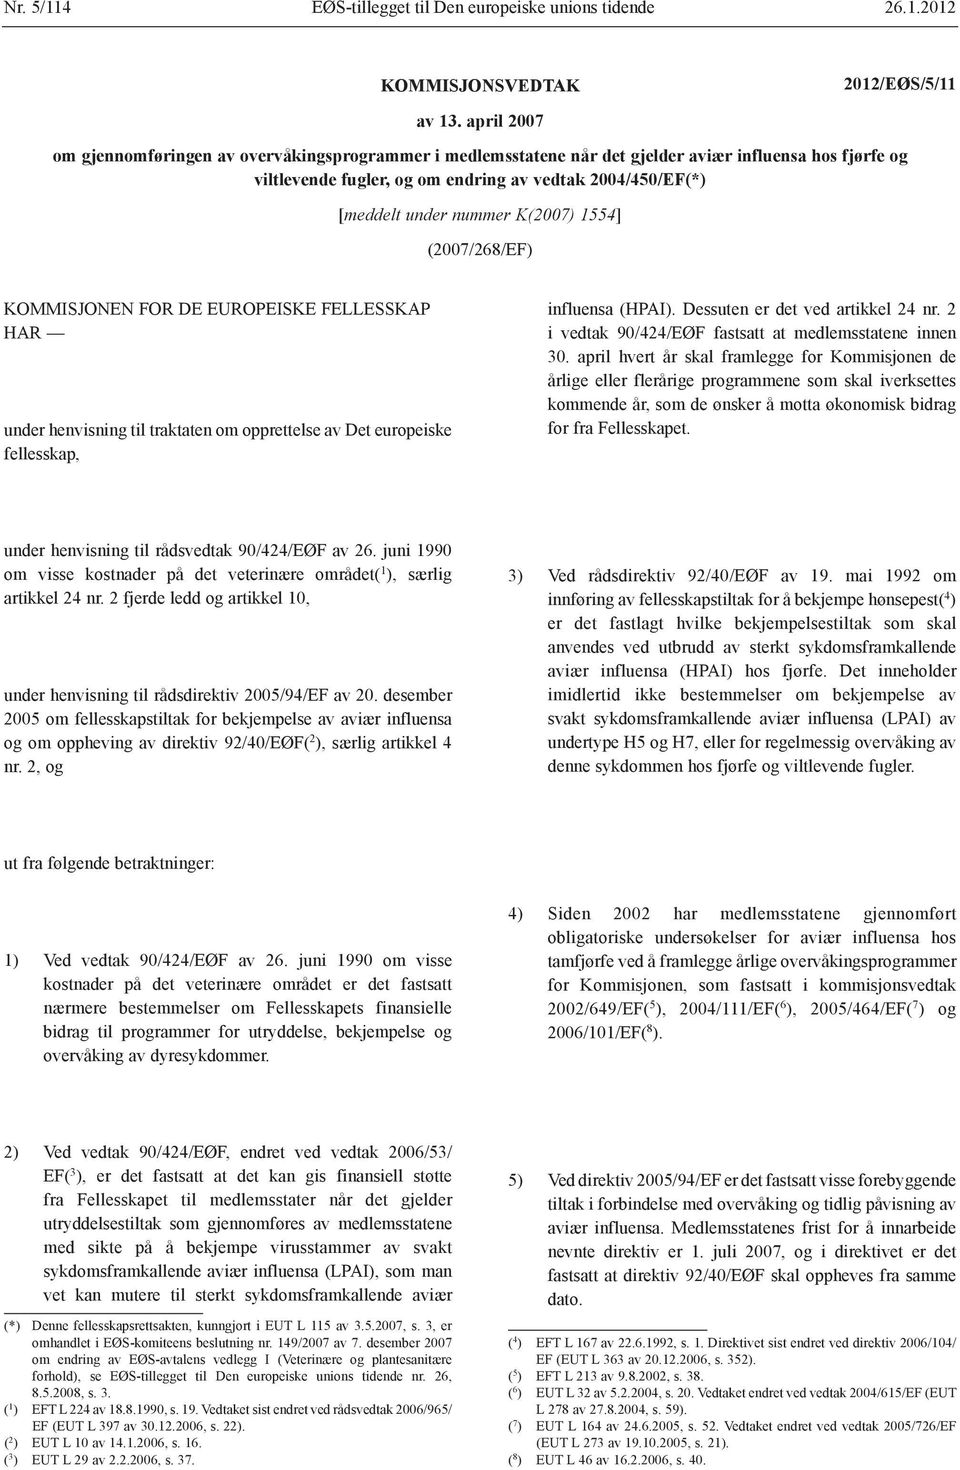 K(2007) 1554] (2007/268/EF) KOMMISJONEN FOR DE EUROPEISKE FELLESSKAP HAR under henvisning til traktaten om opprettelse av Det europeiske fellesskap, influensa (HPAI).